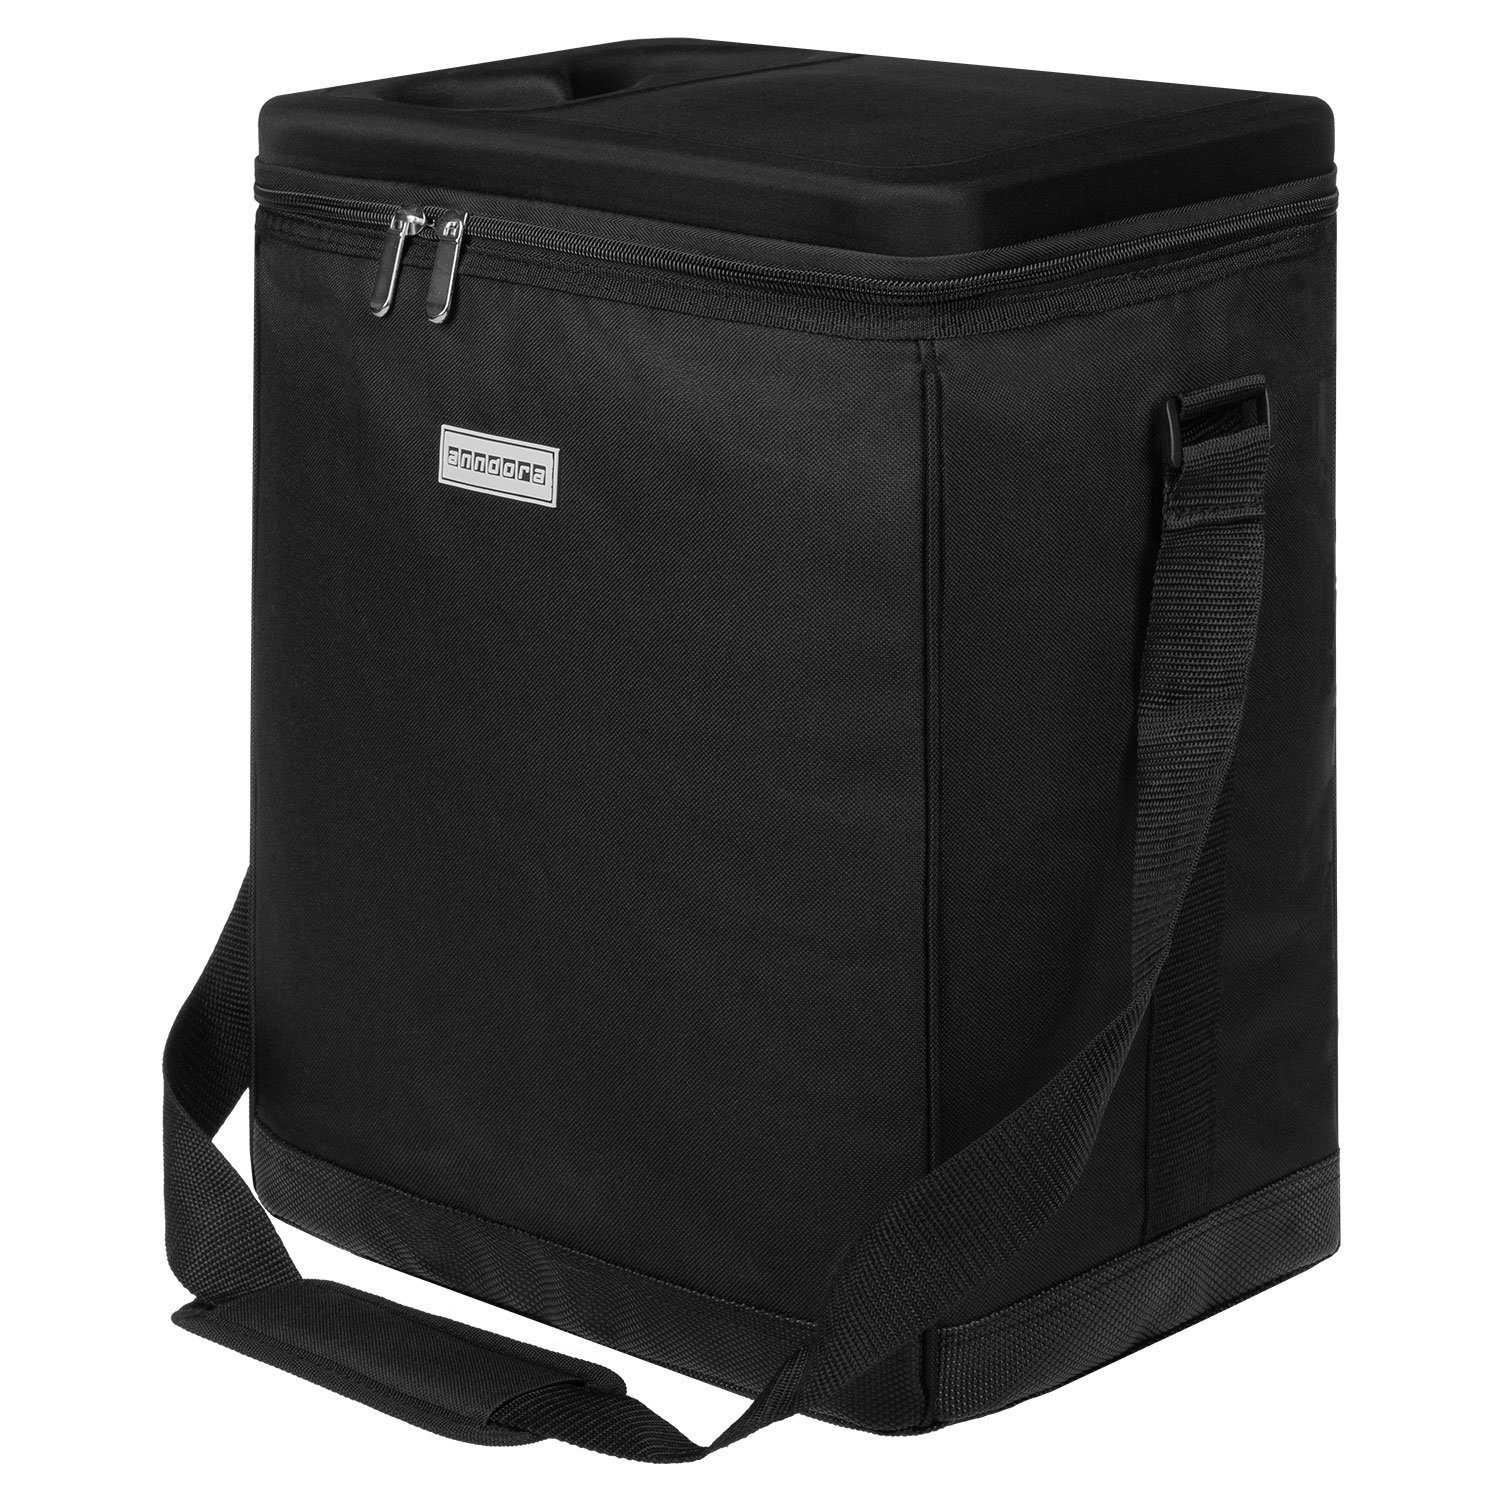 anndora Kühlbox - Kühltasche kompatibel carrycruiser 32L - reisenthel Kühleinsatz schwarz